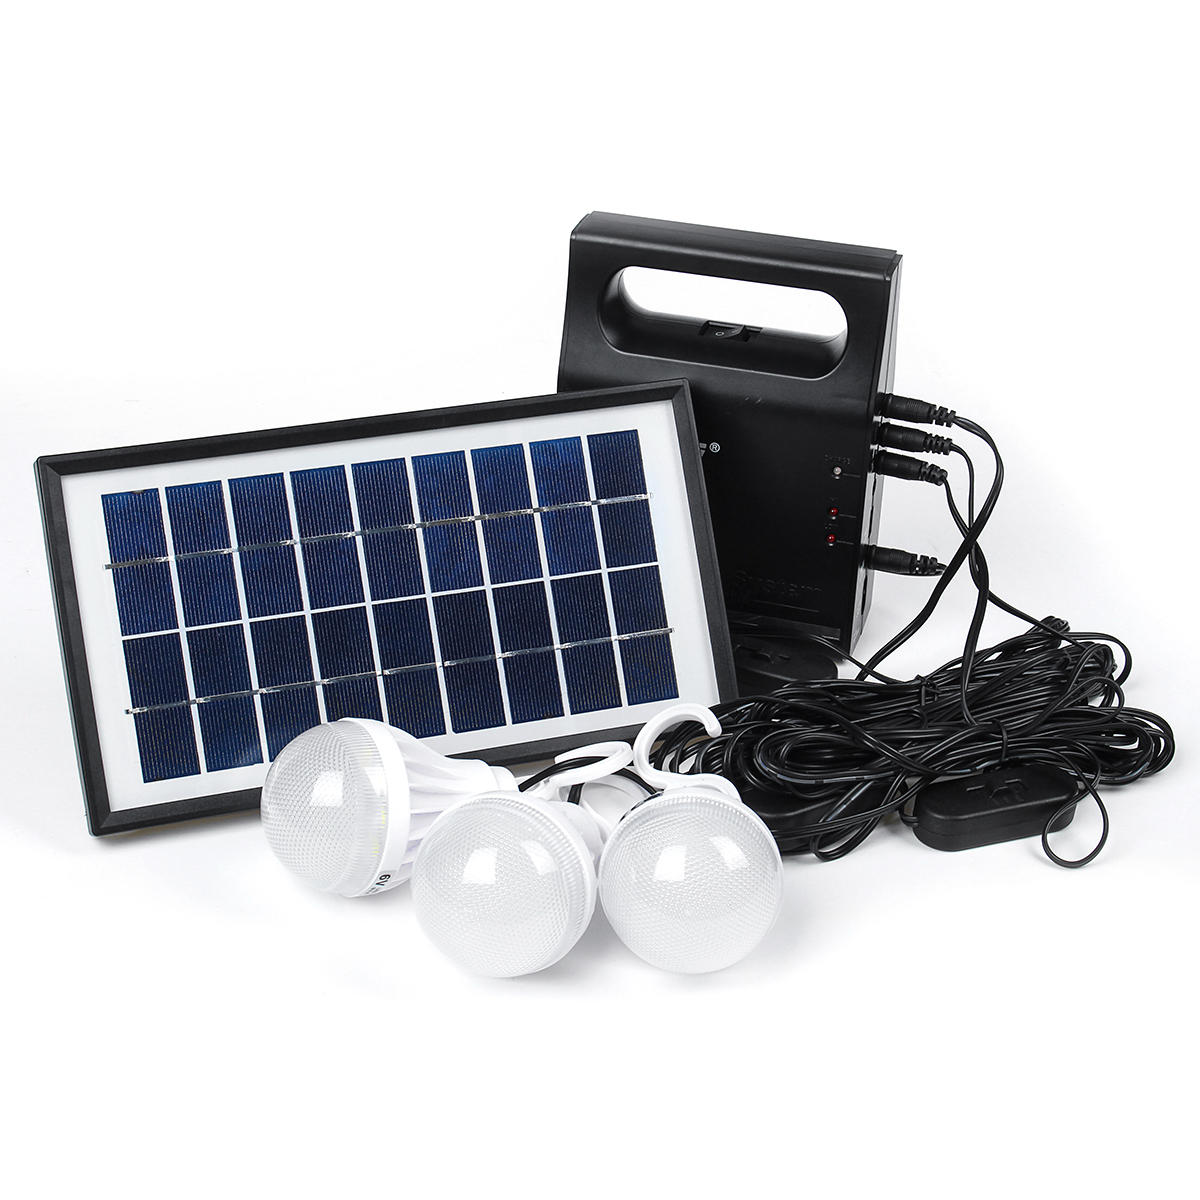 Sistema di illuminazione a pannelli solari con lampadine LED USB da 6V per esterni, giardini, campeggio ed emergenze